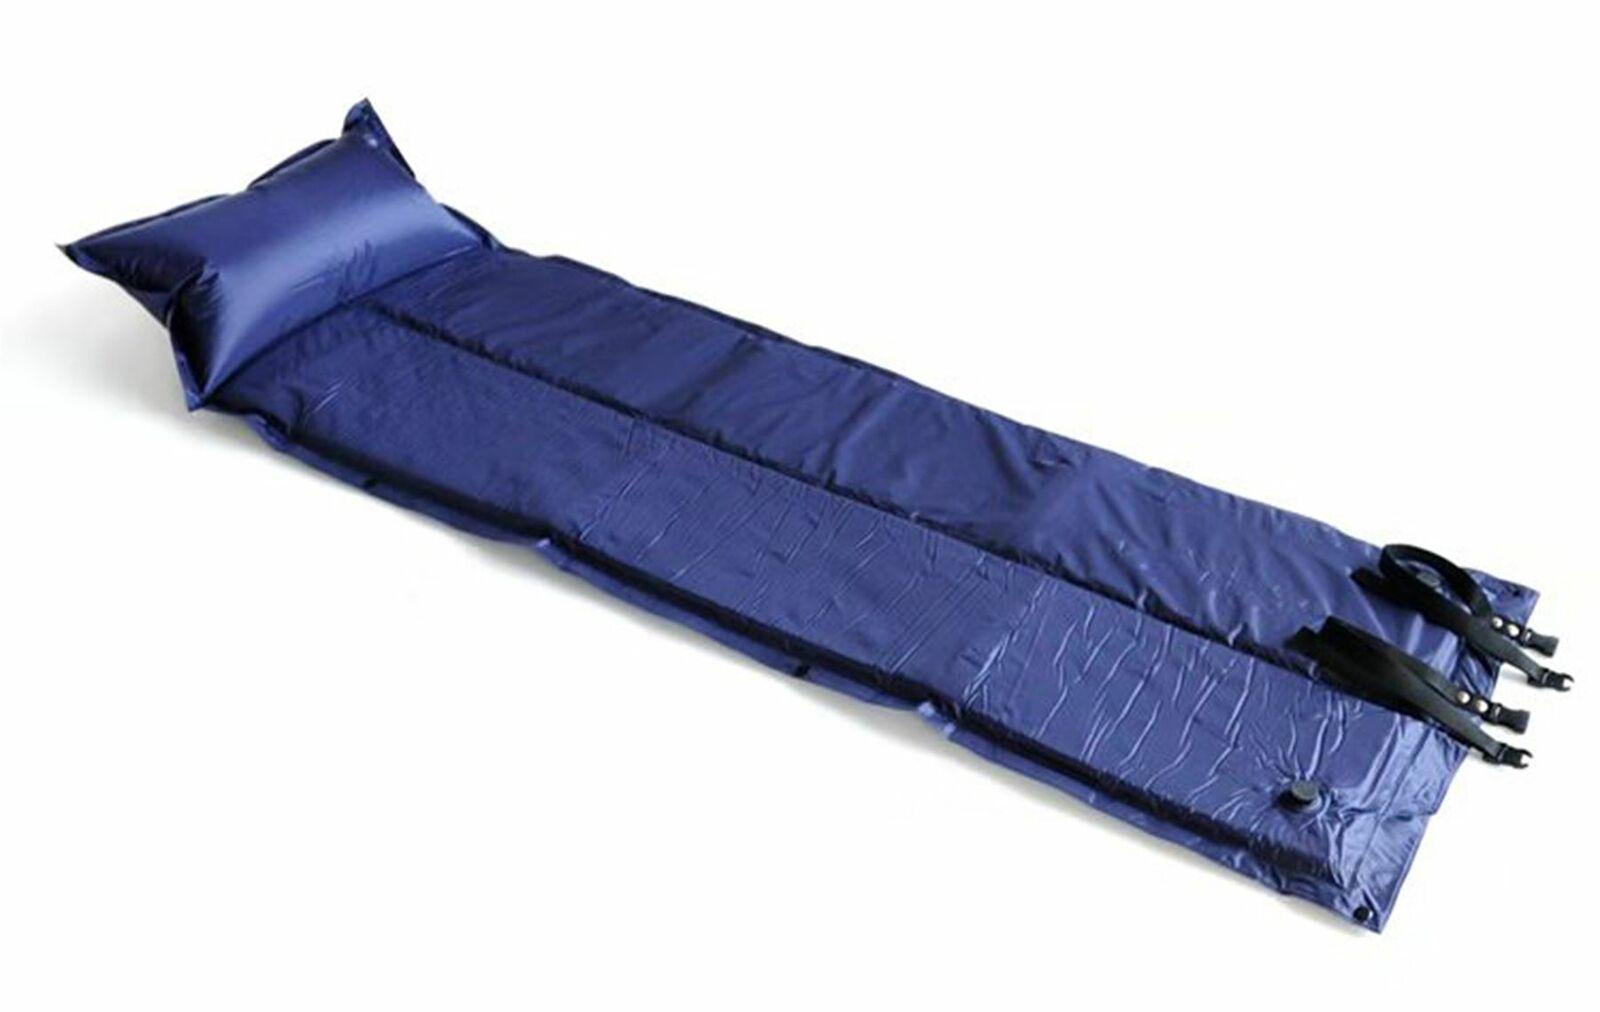 nap mat inflatable sleeping mattress